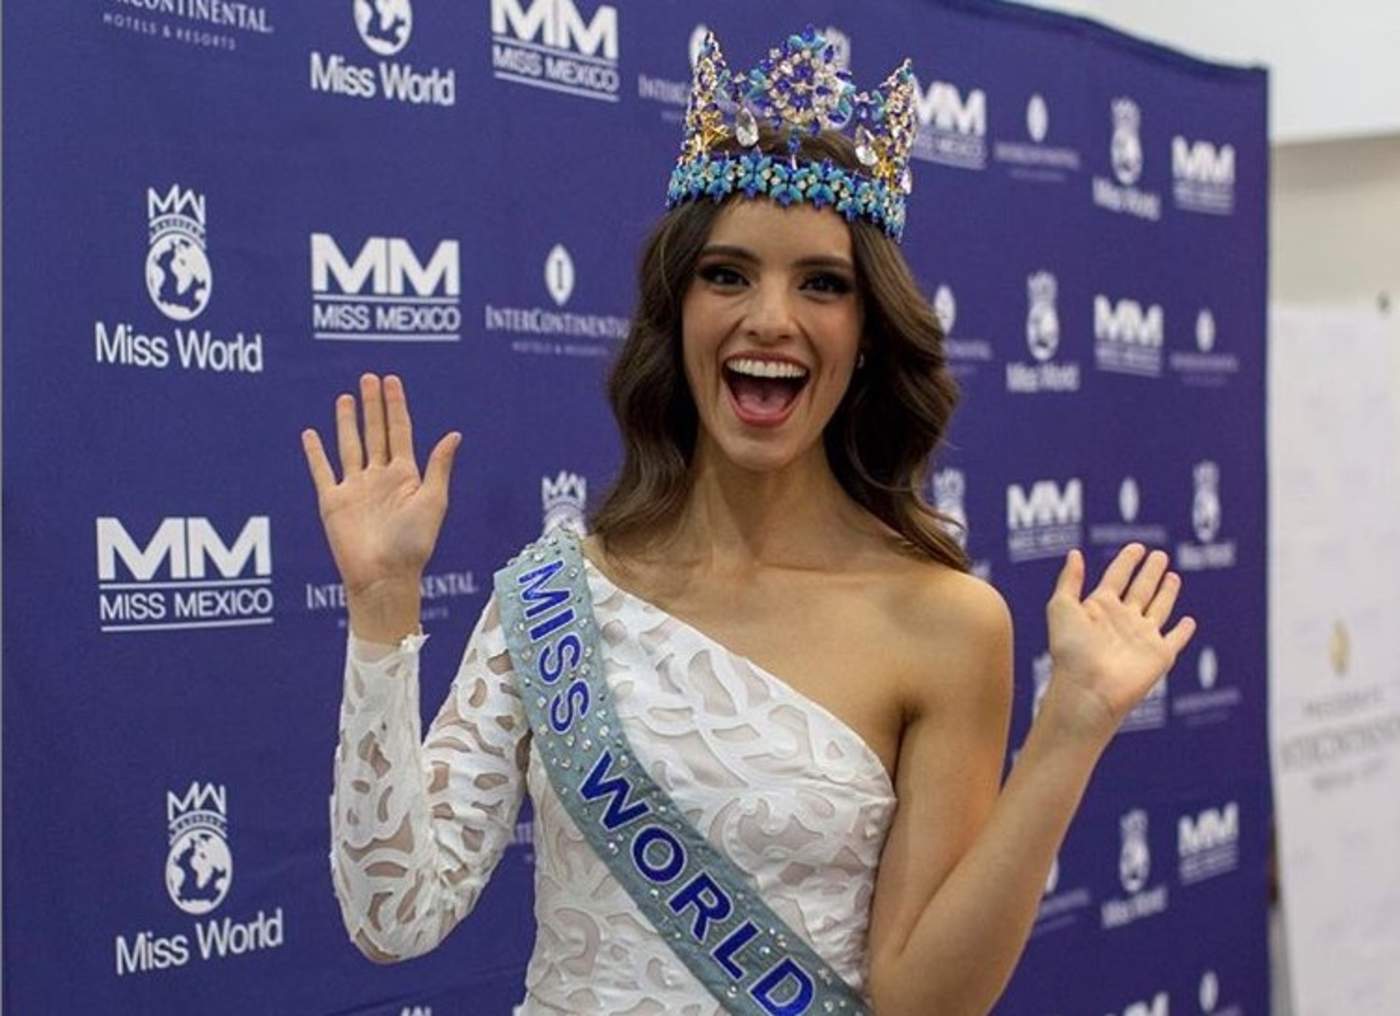 De regreso. La Miss Mundo 2019 causa tumulto en el aeropuerto a su llegada a México. (ESPECIAL)